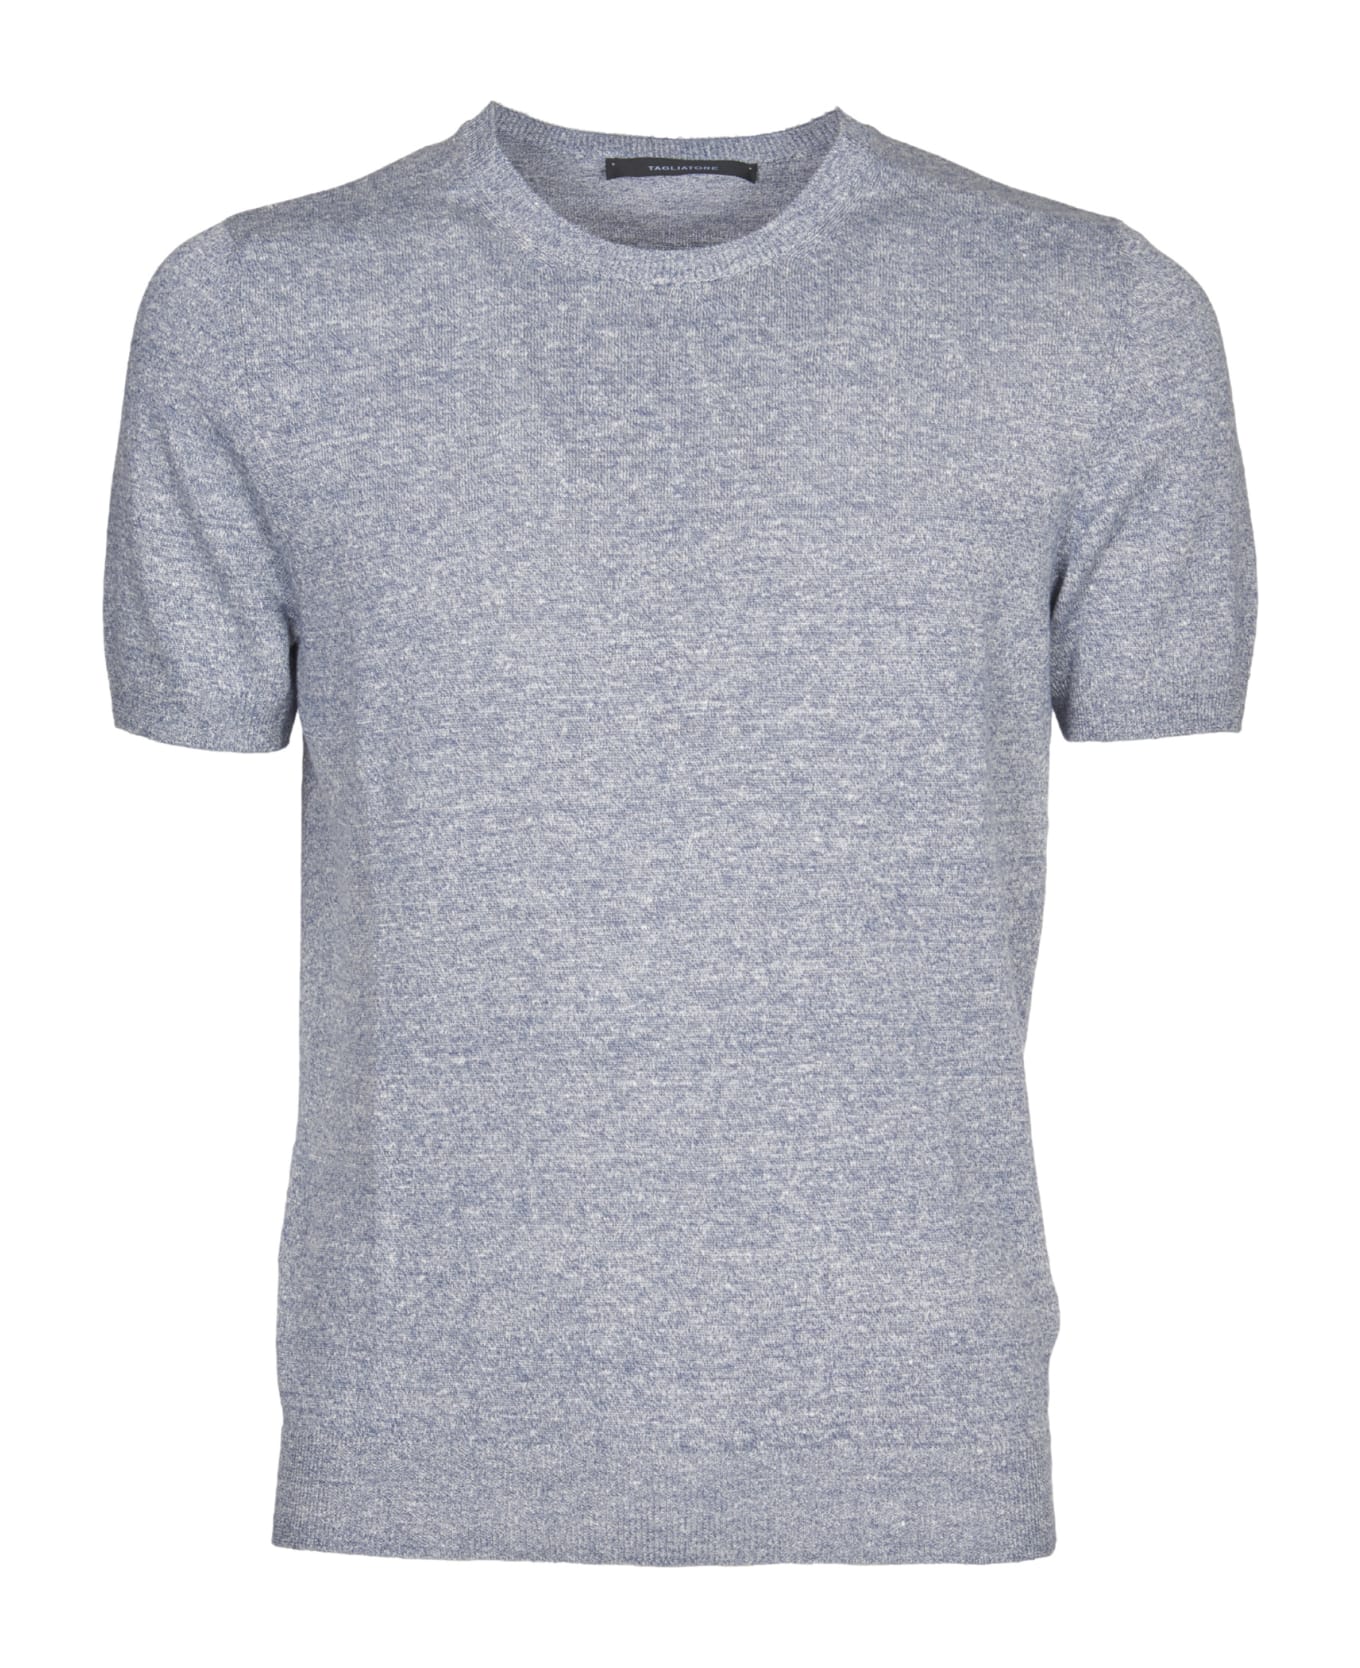 Tagliatore T-shirt - Blue シャツ